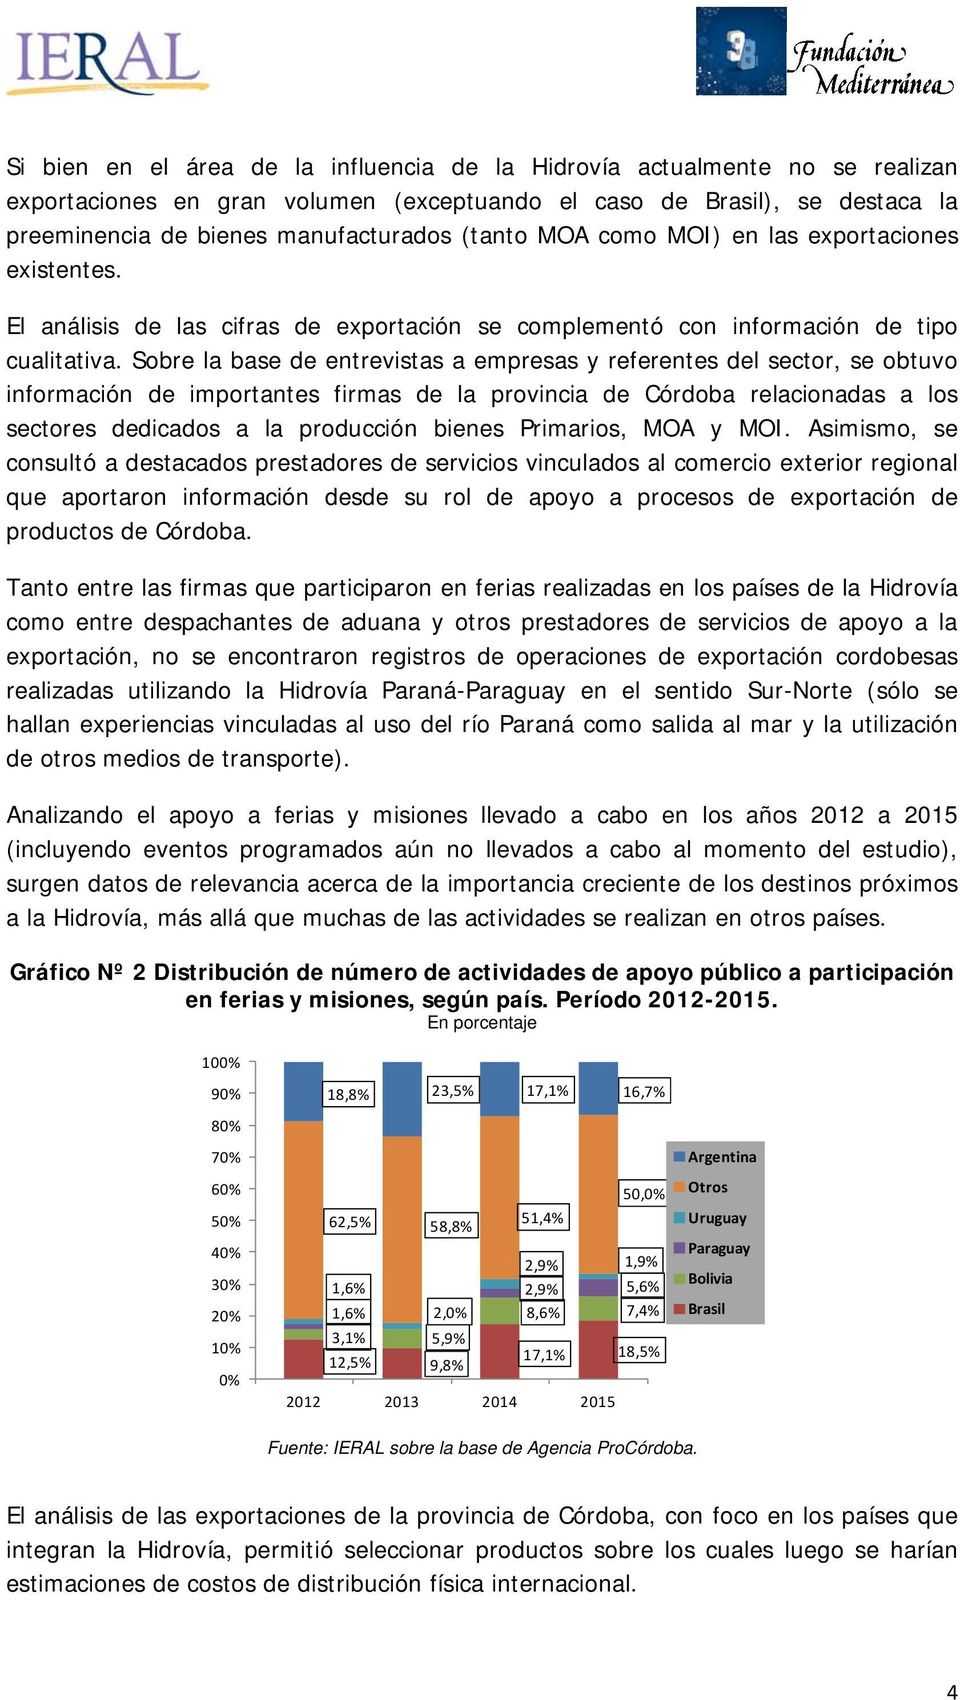 Sobre la base de entrevistas a empresas y referentes del sector, se obtuvo información de importantes firmas de la provincia de Córdoba relacionadas a los sectores dedicados a la producción bienes